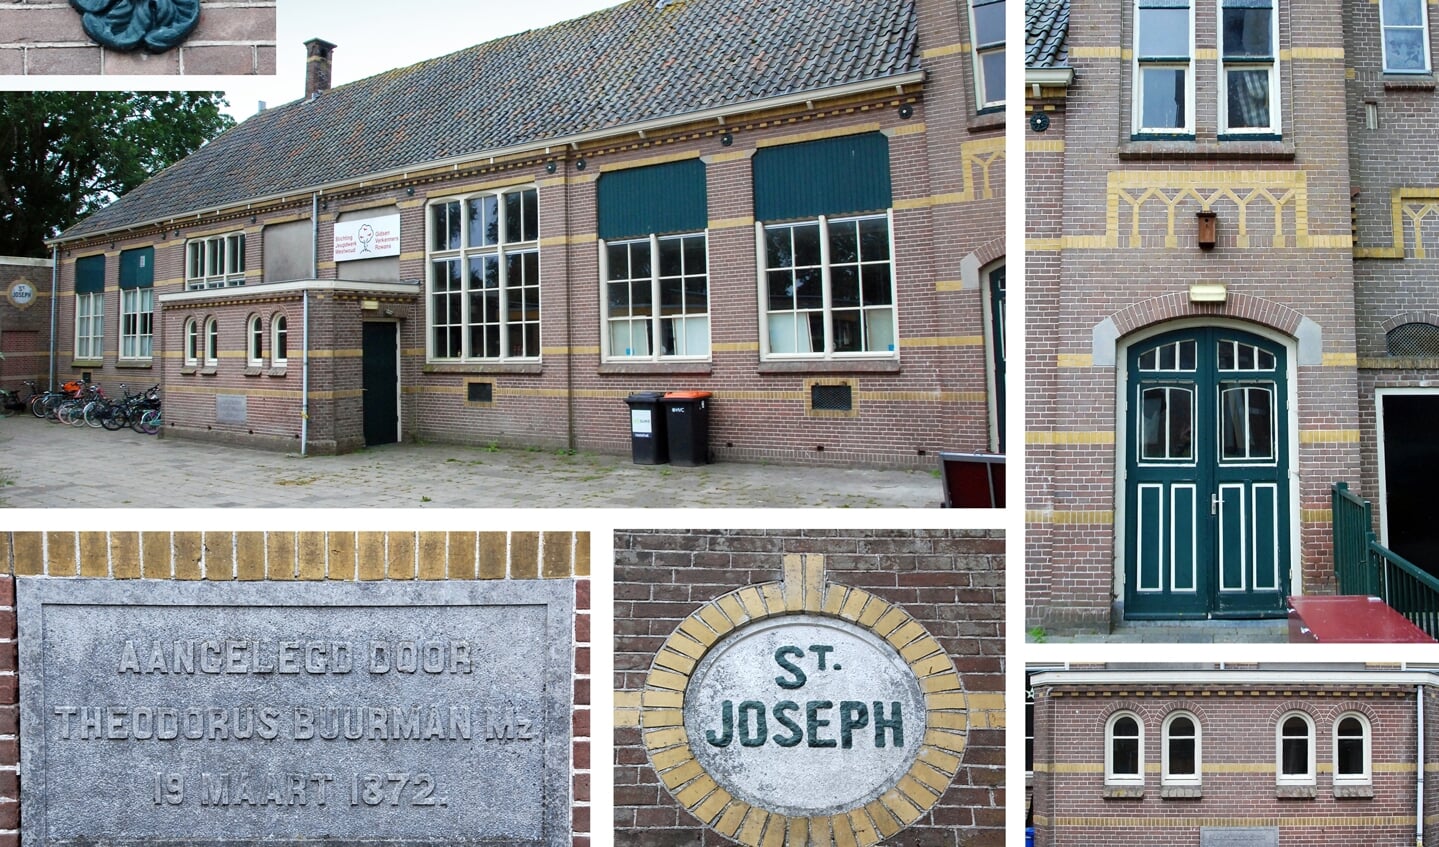 Oude Zusterschool S. Joseph van grote cultuurhistorische waarde voor Westwoud, aldus SHHW en vindt het Cuypersgenootschap aan haar zijde.